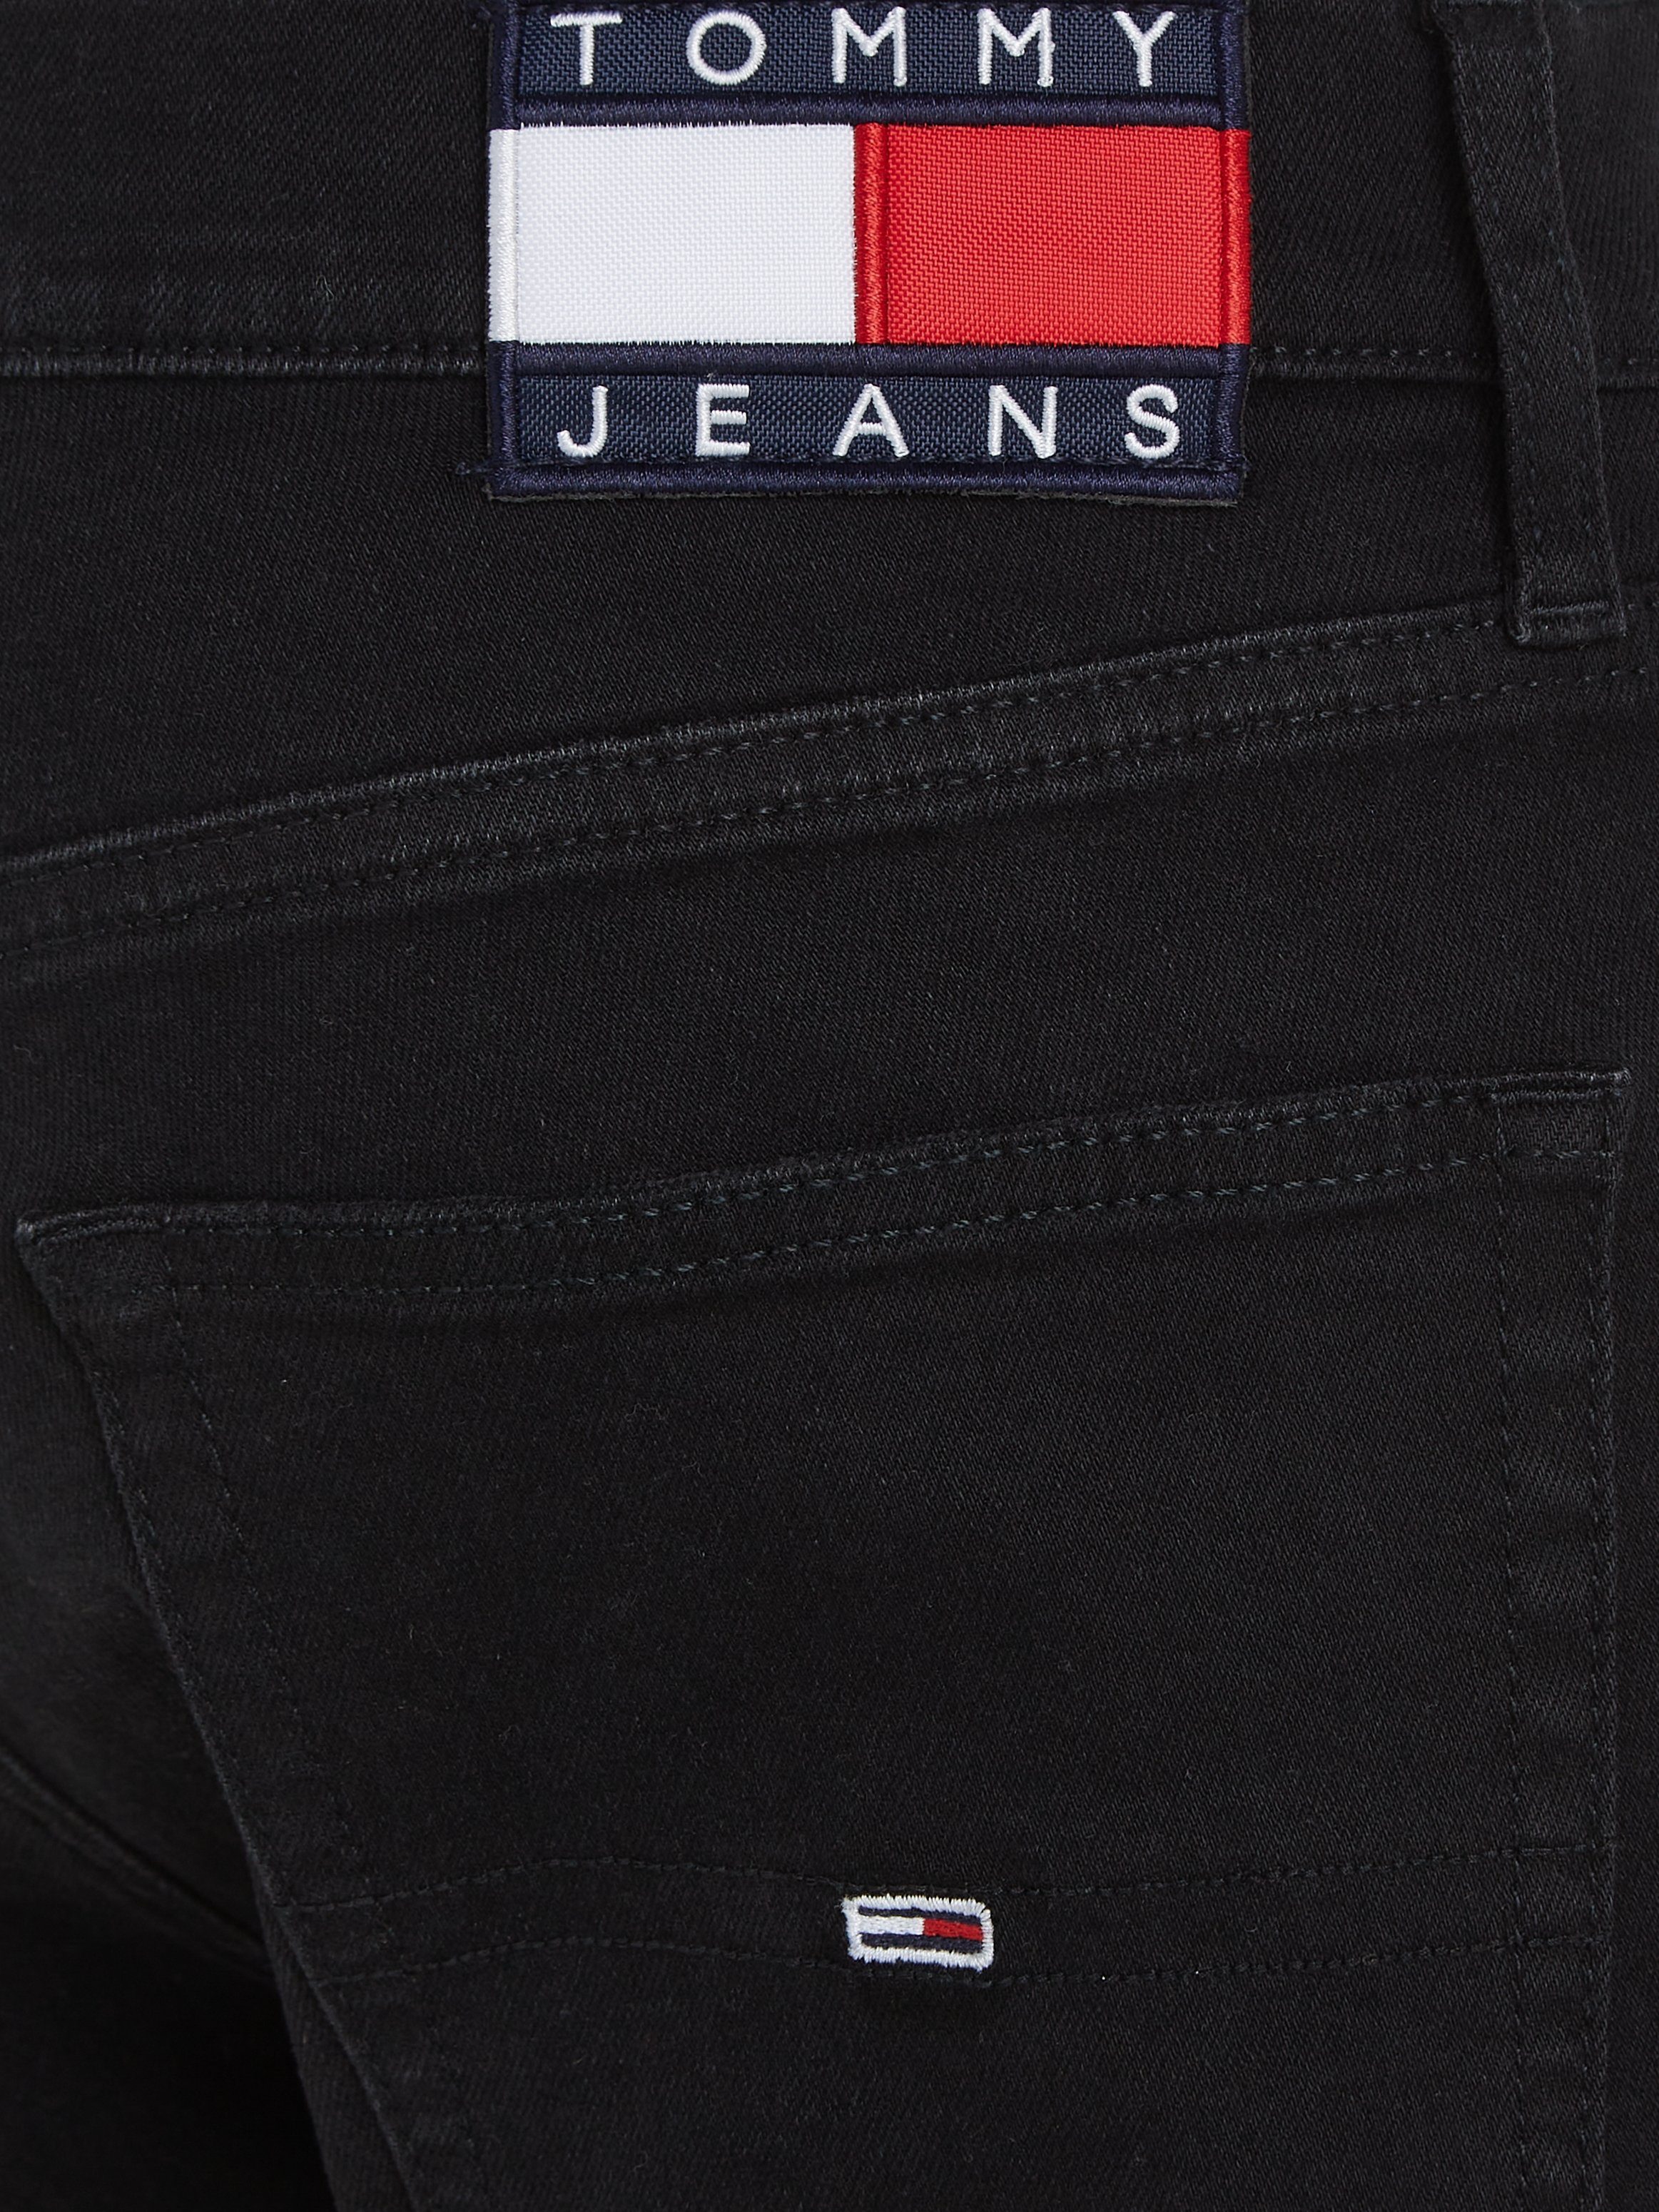 Jeans black 1BZ denim SLIM Tommy TPRD 5-Pocket-Jeans AUSTIN